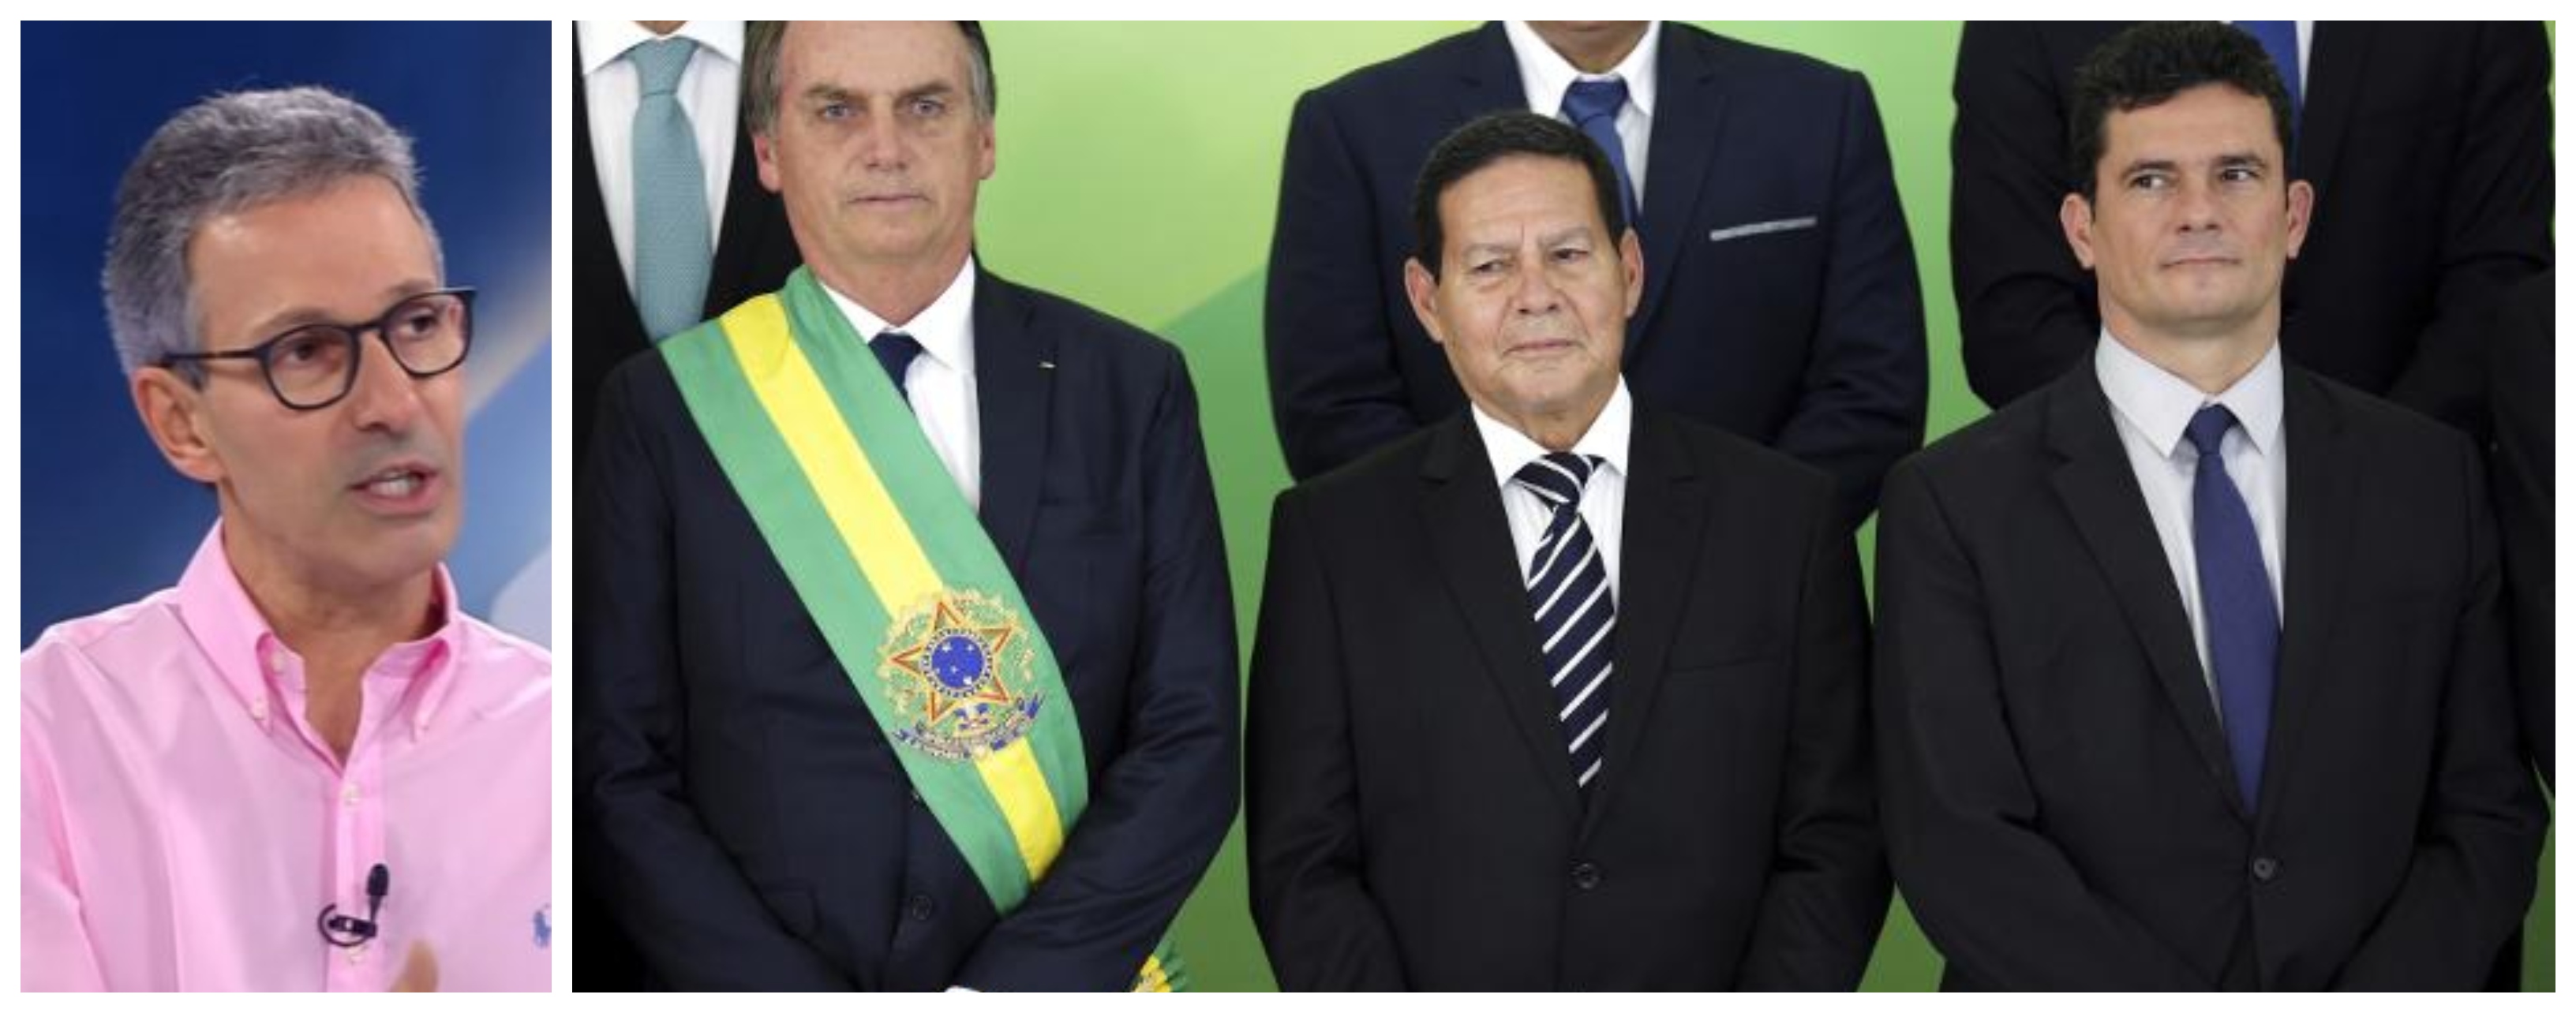 Rogério Correia: Zema imita o bajulador e entreguista Azeredo e dá título a Bolsonaro, Mourão e Moro